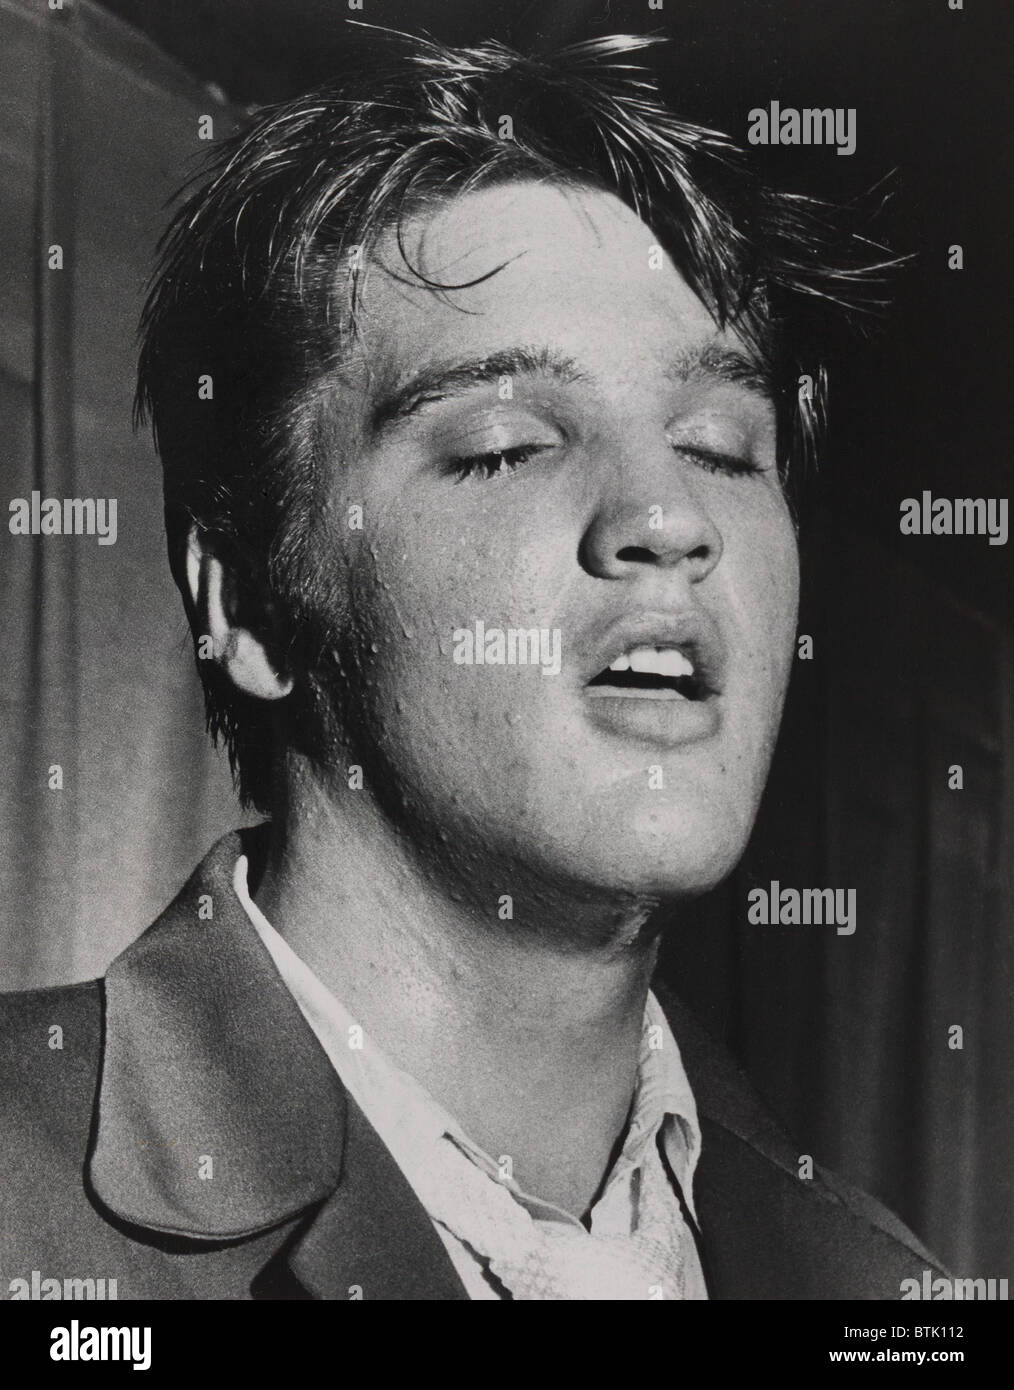 Elvis Presley (1935-1977), dans un portrait du rendement par Bob Moreland du St. Petersburg Times. 1957. Banque D'Images